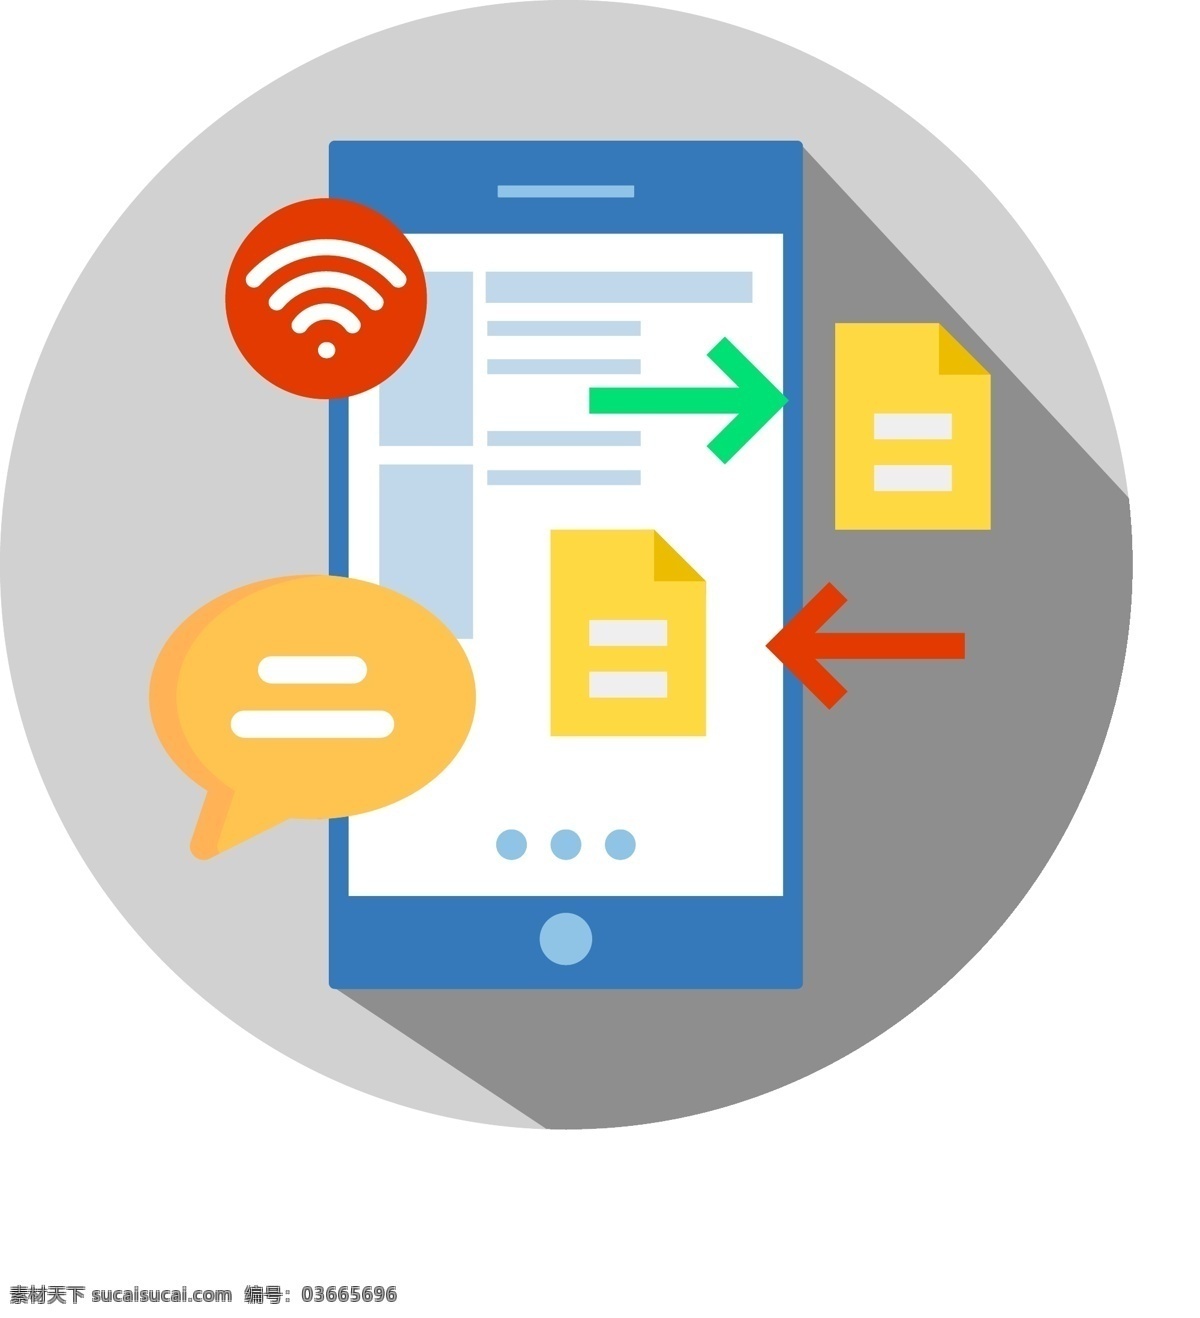 手机 图标 元素 短信 信息 接收 手机图标 图形 wifi icon 矢量 矢量图标 长投影 扁平化 扁平风 讯息 邮件